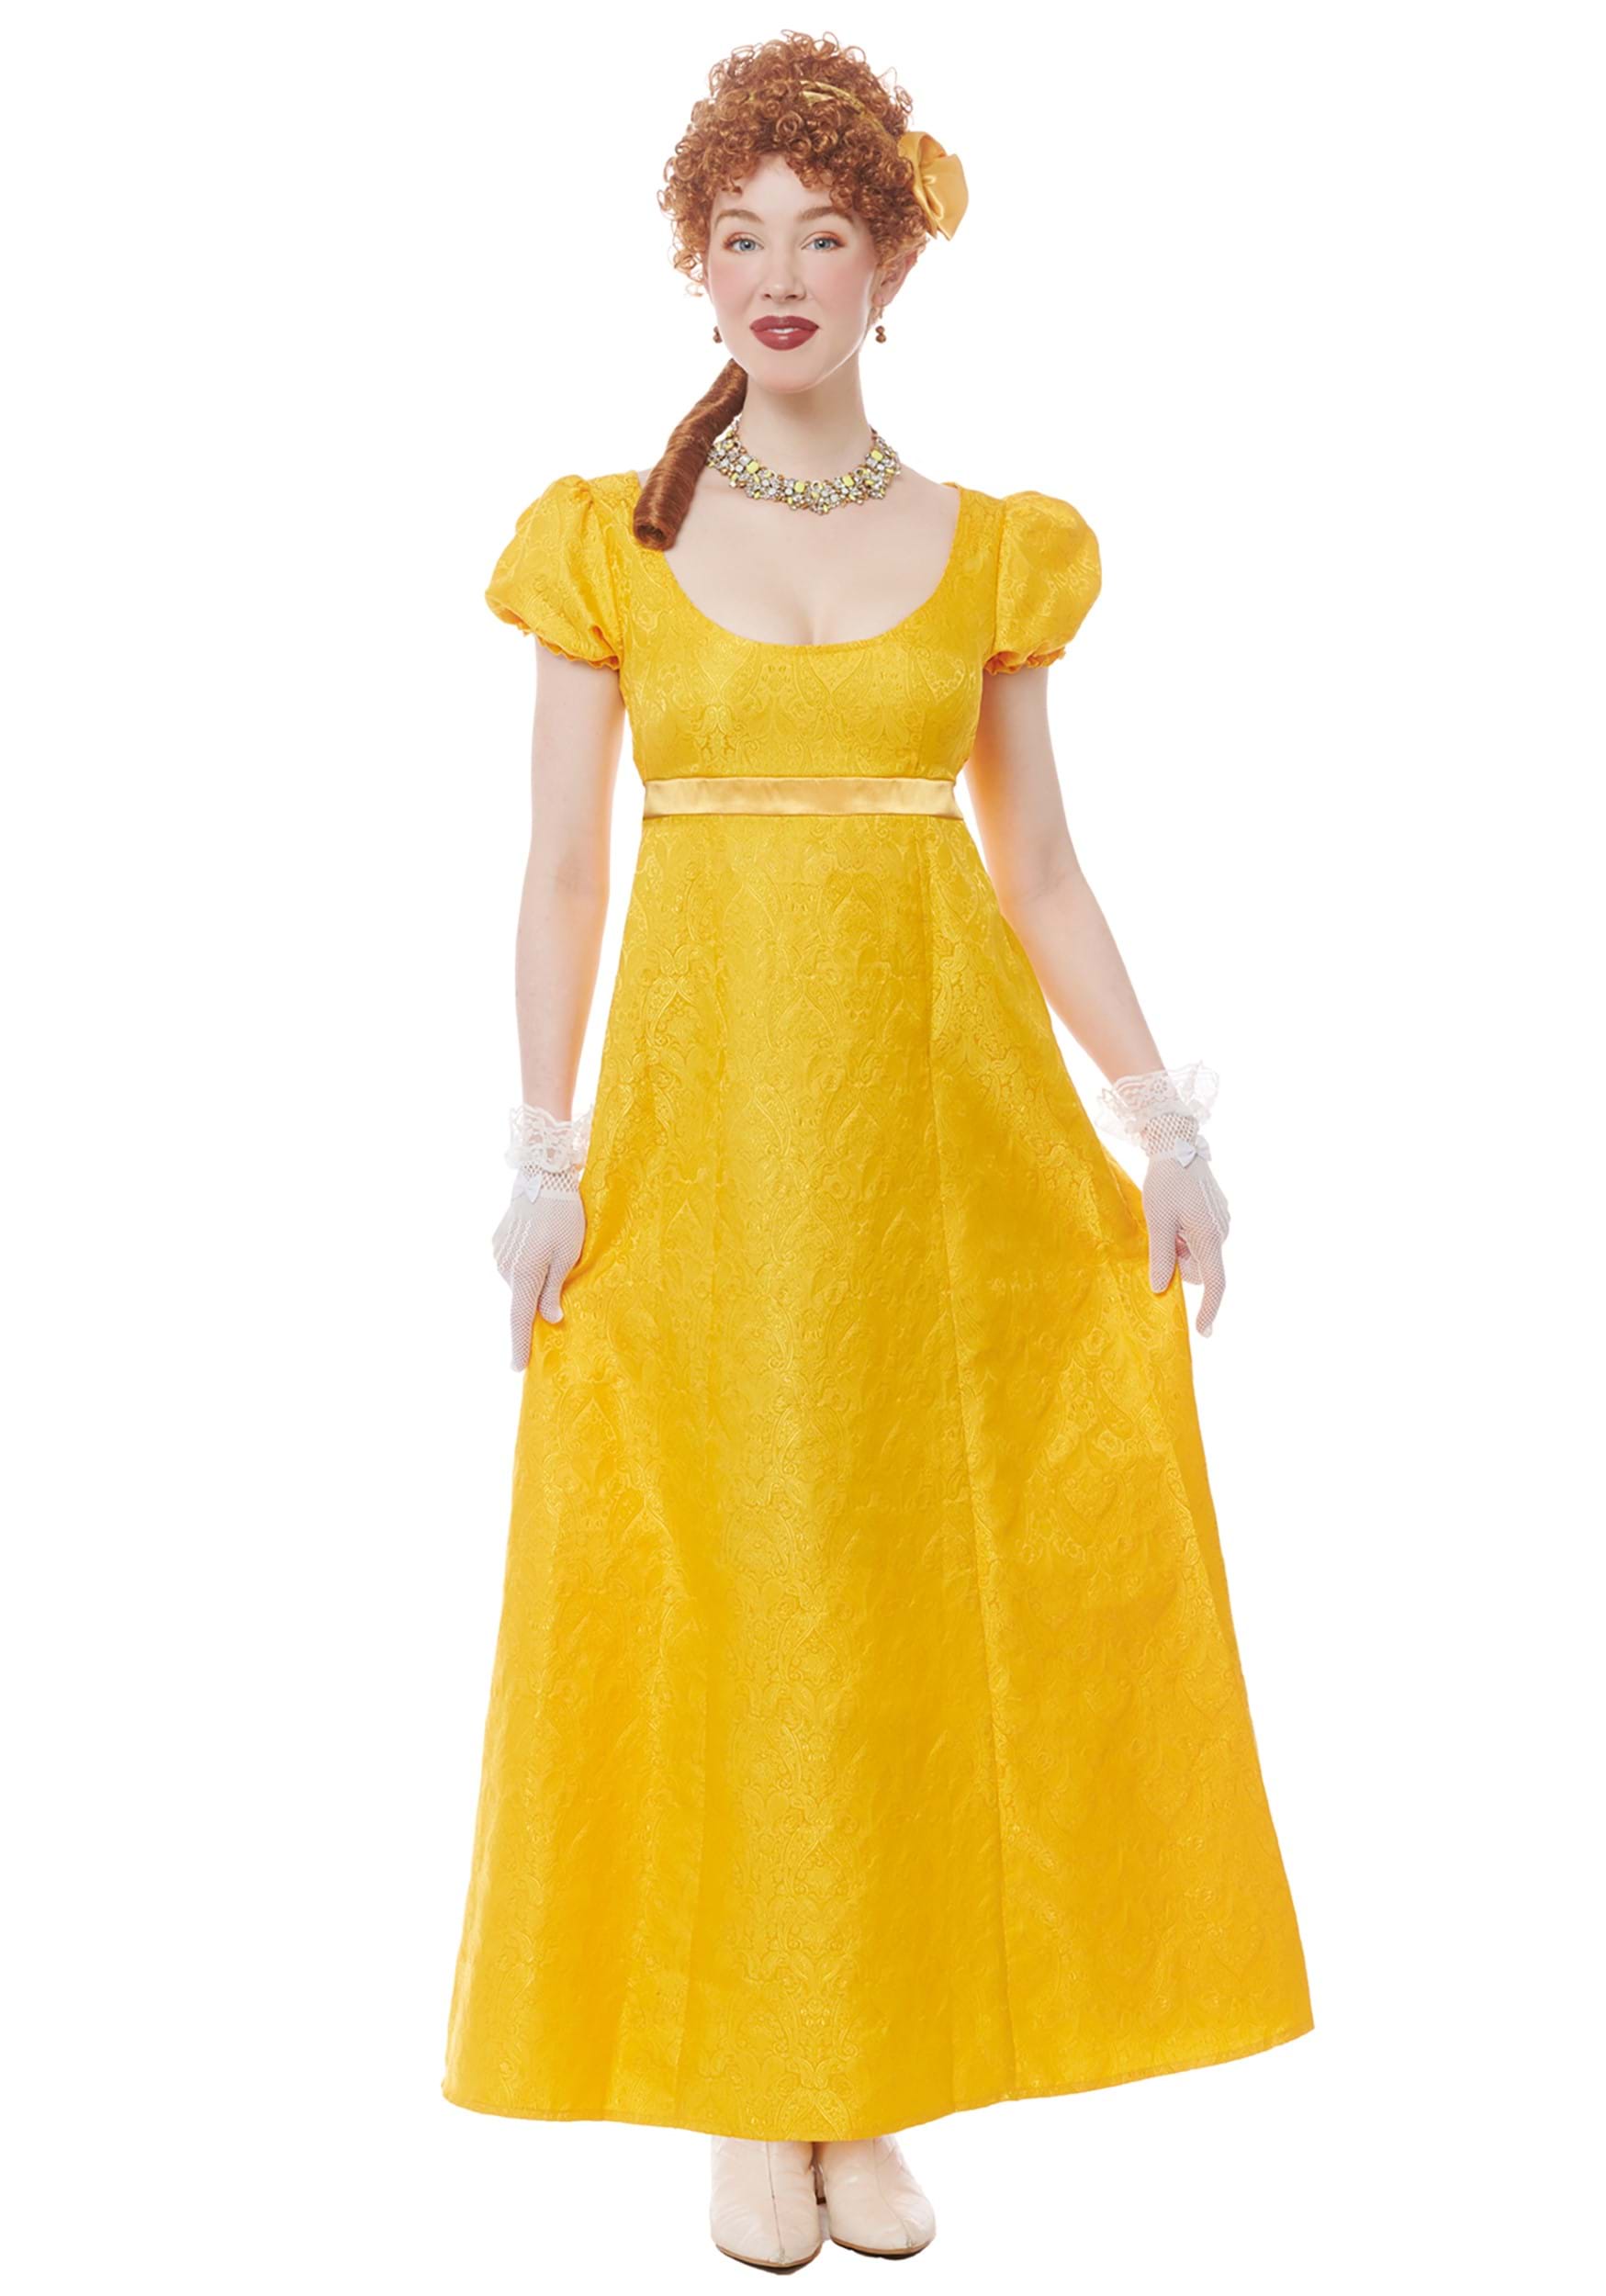 Regency Debutante Fancy Dress Costume For Women